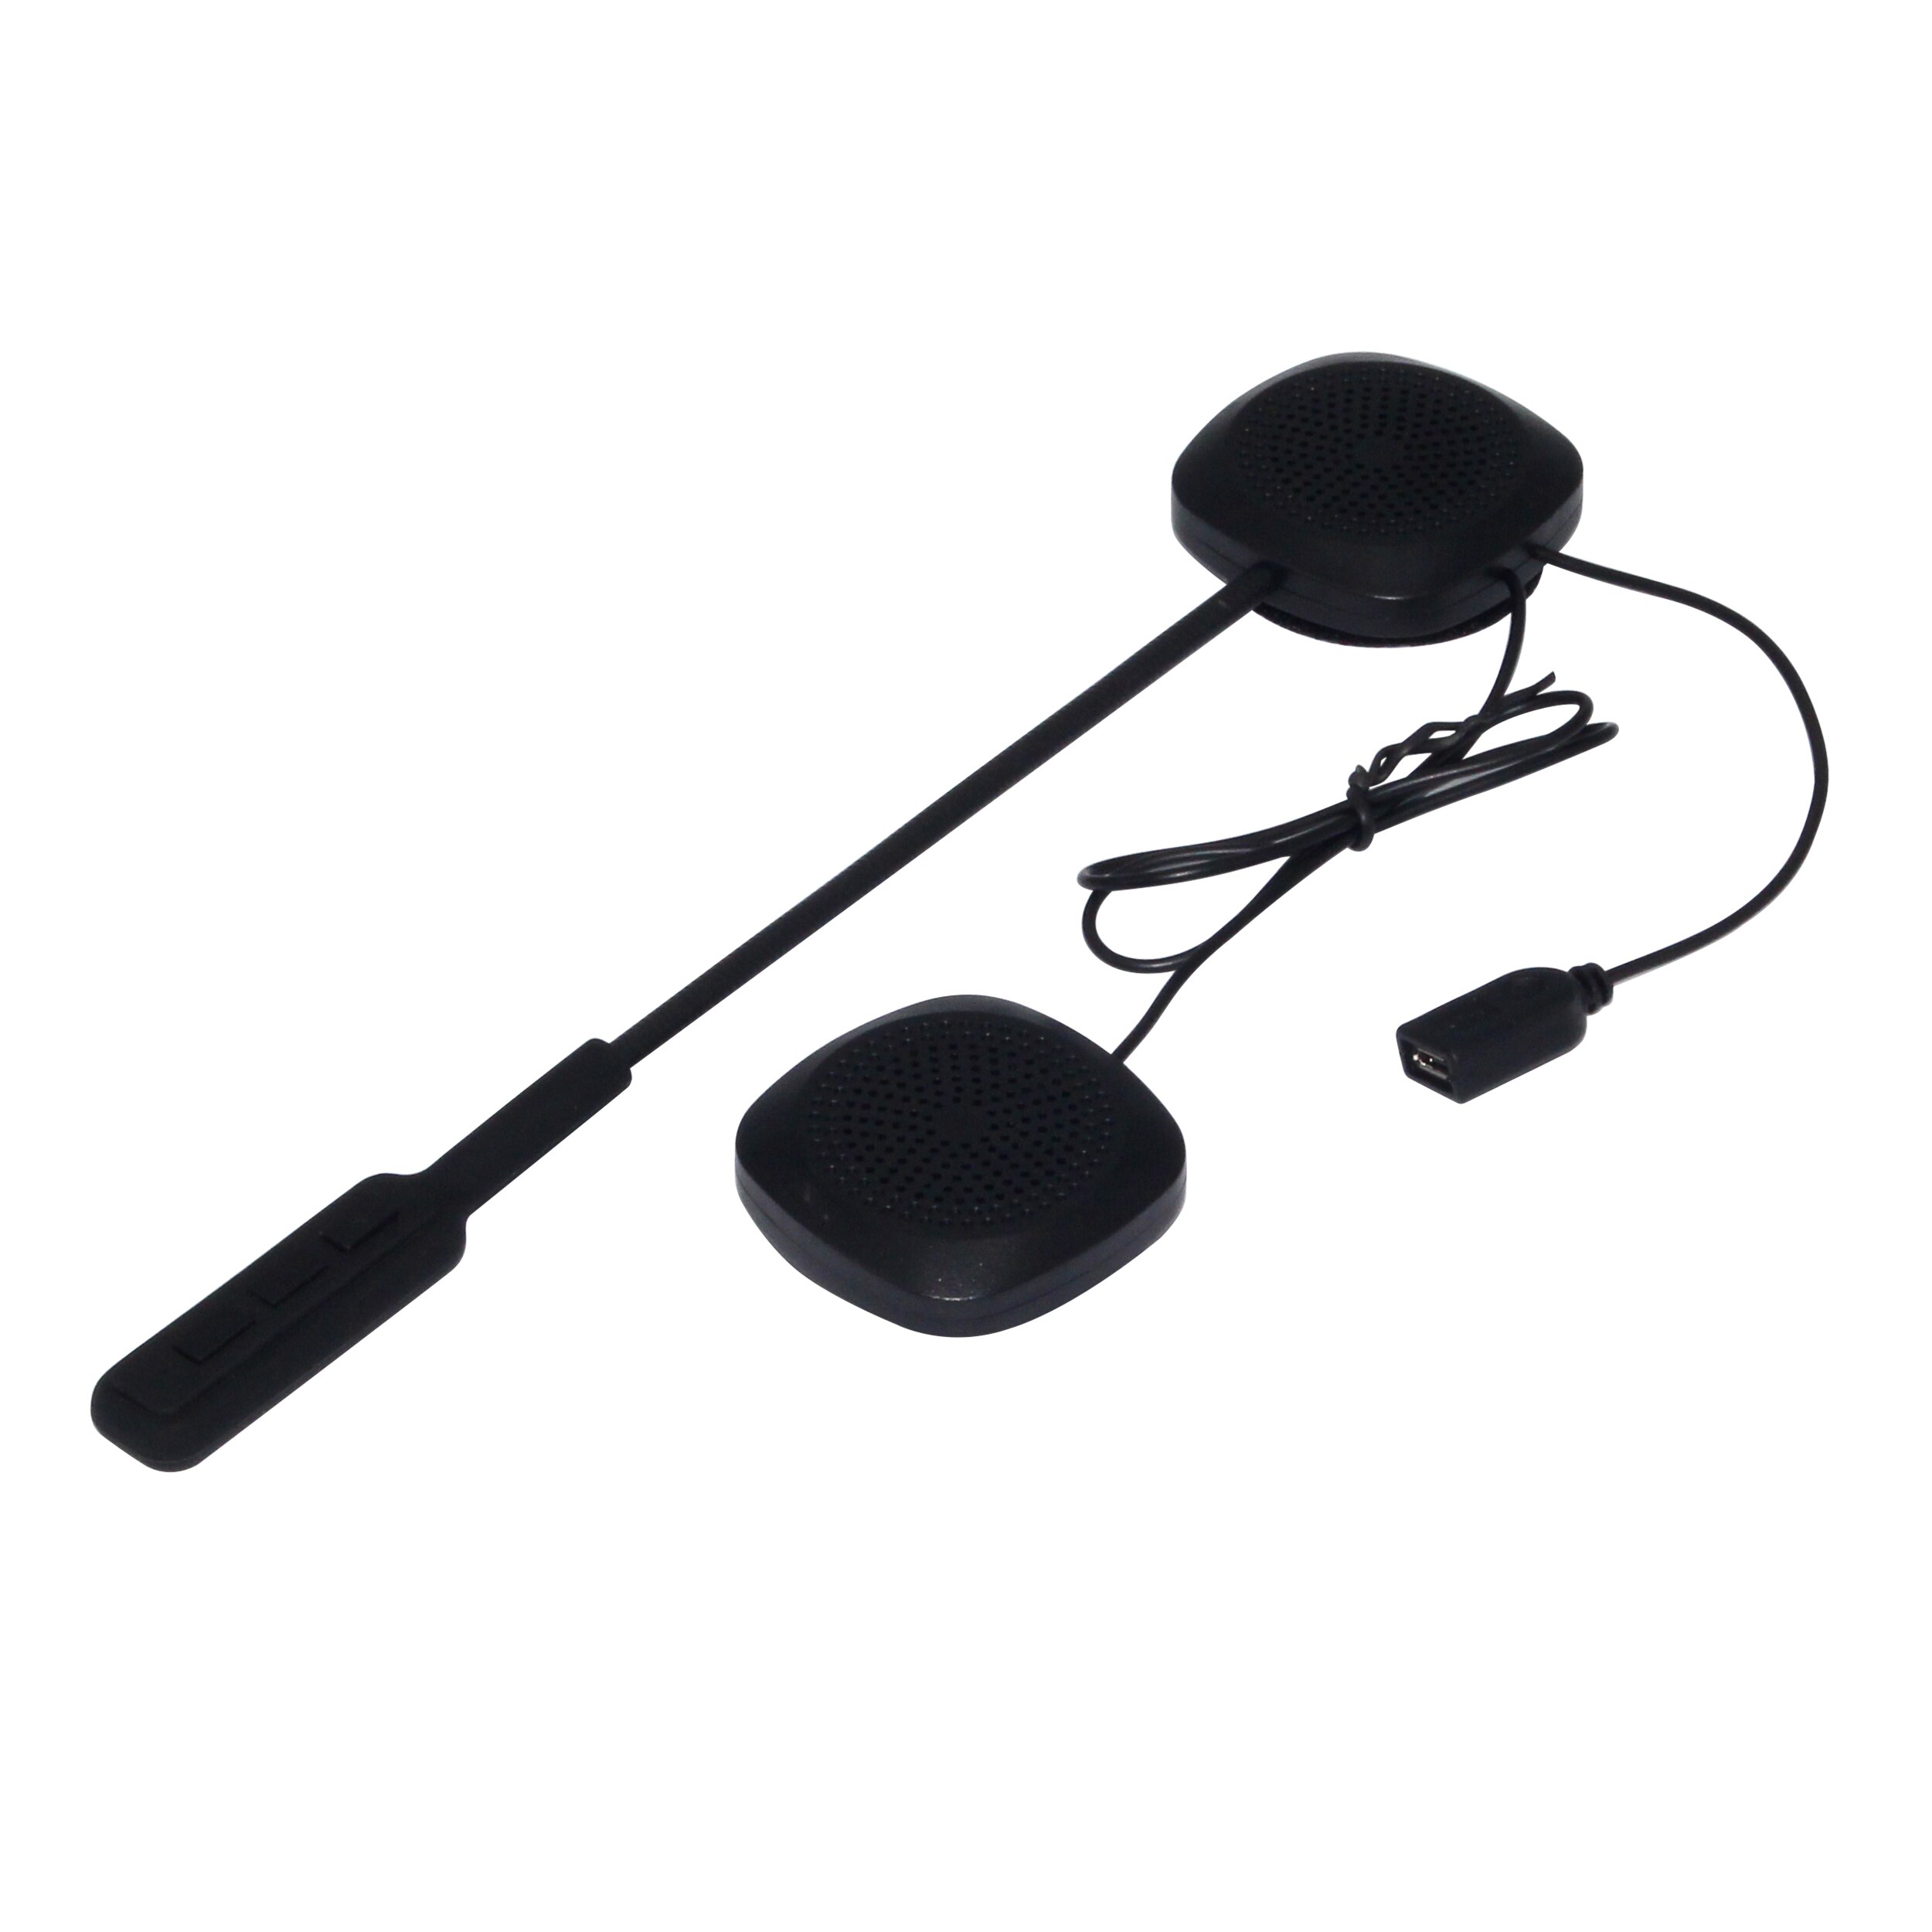 Bluetooth Moto casque casque sans fil mains libres stéréo écouteur Moto Moto casque casque MP3 haut-parleur pour voiture